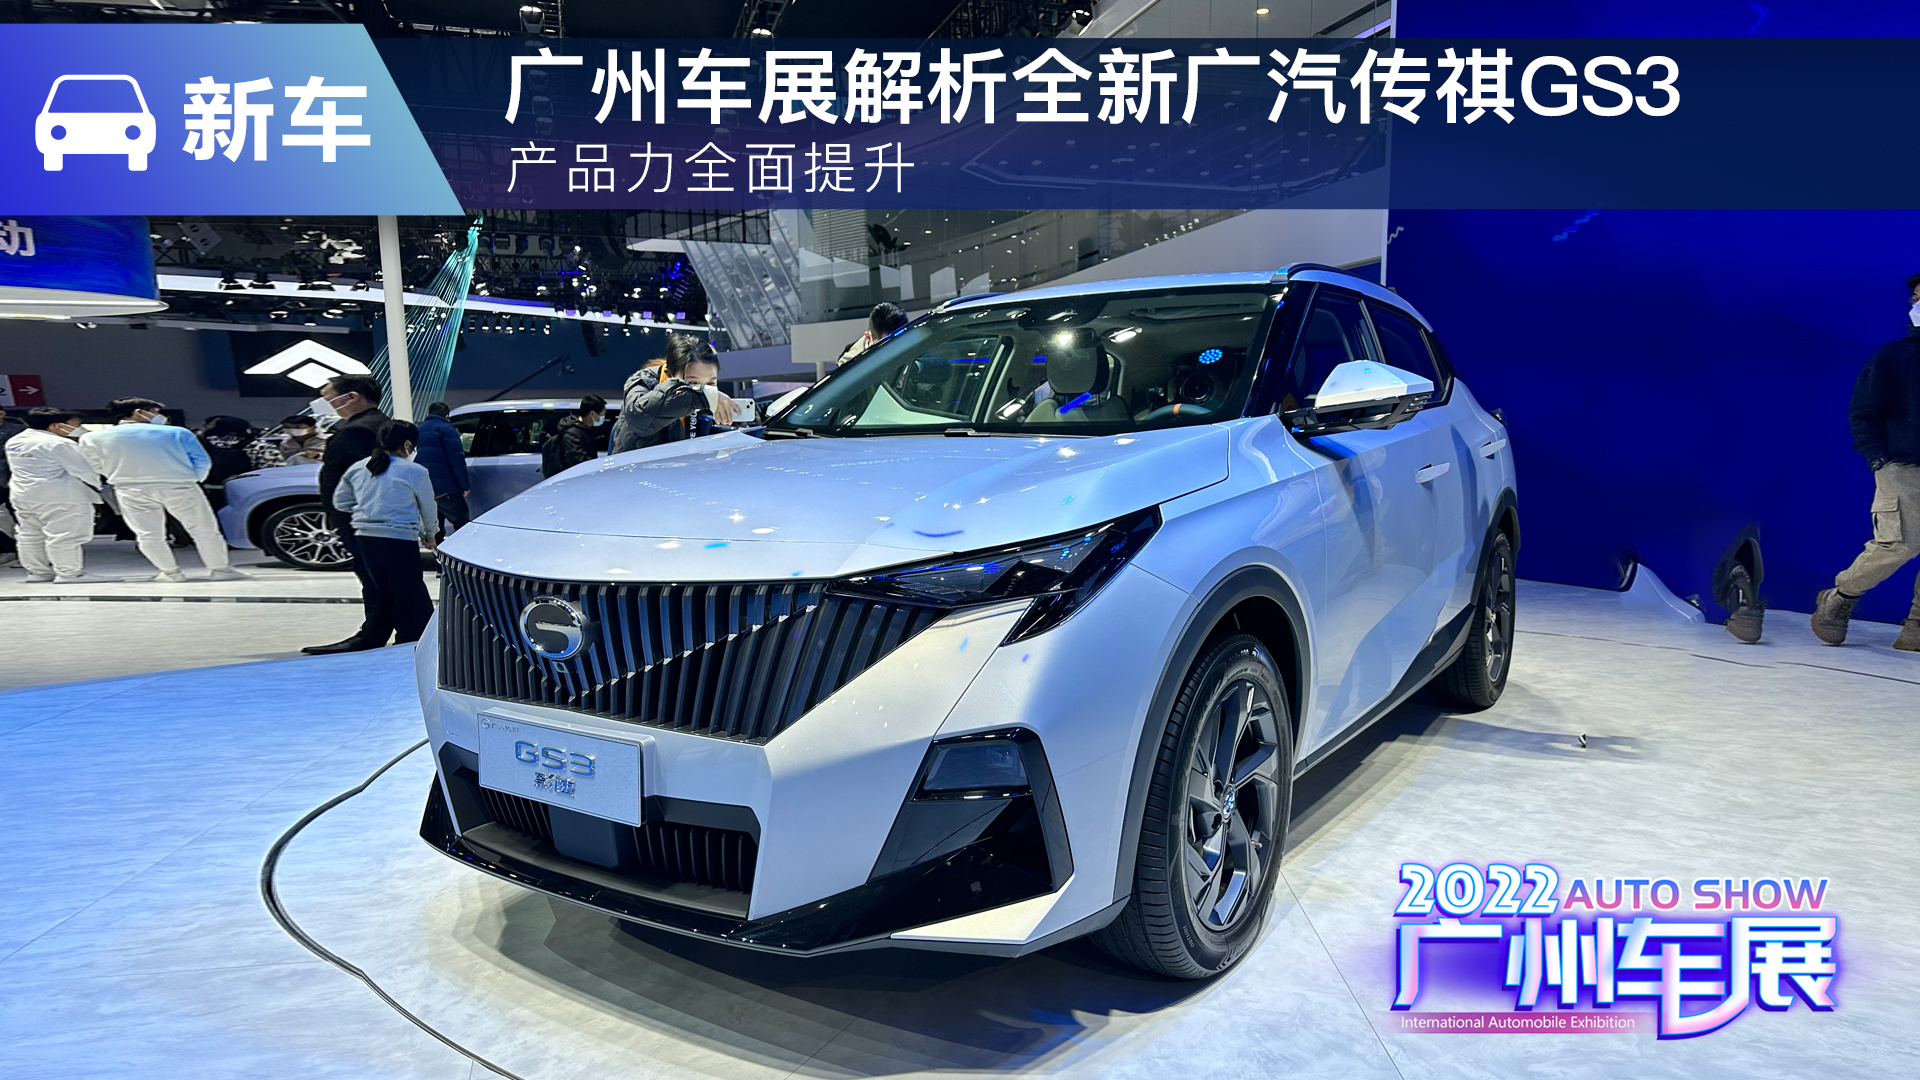 产品力全面提升 广州车展解析全新广汽传祺GS3